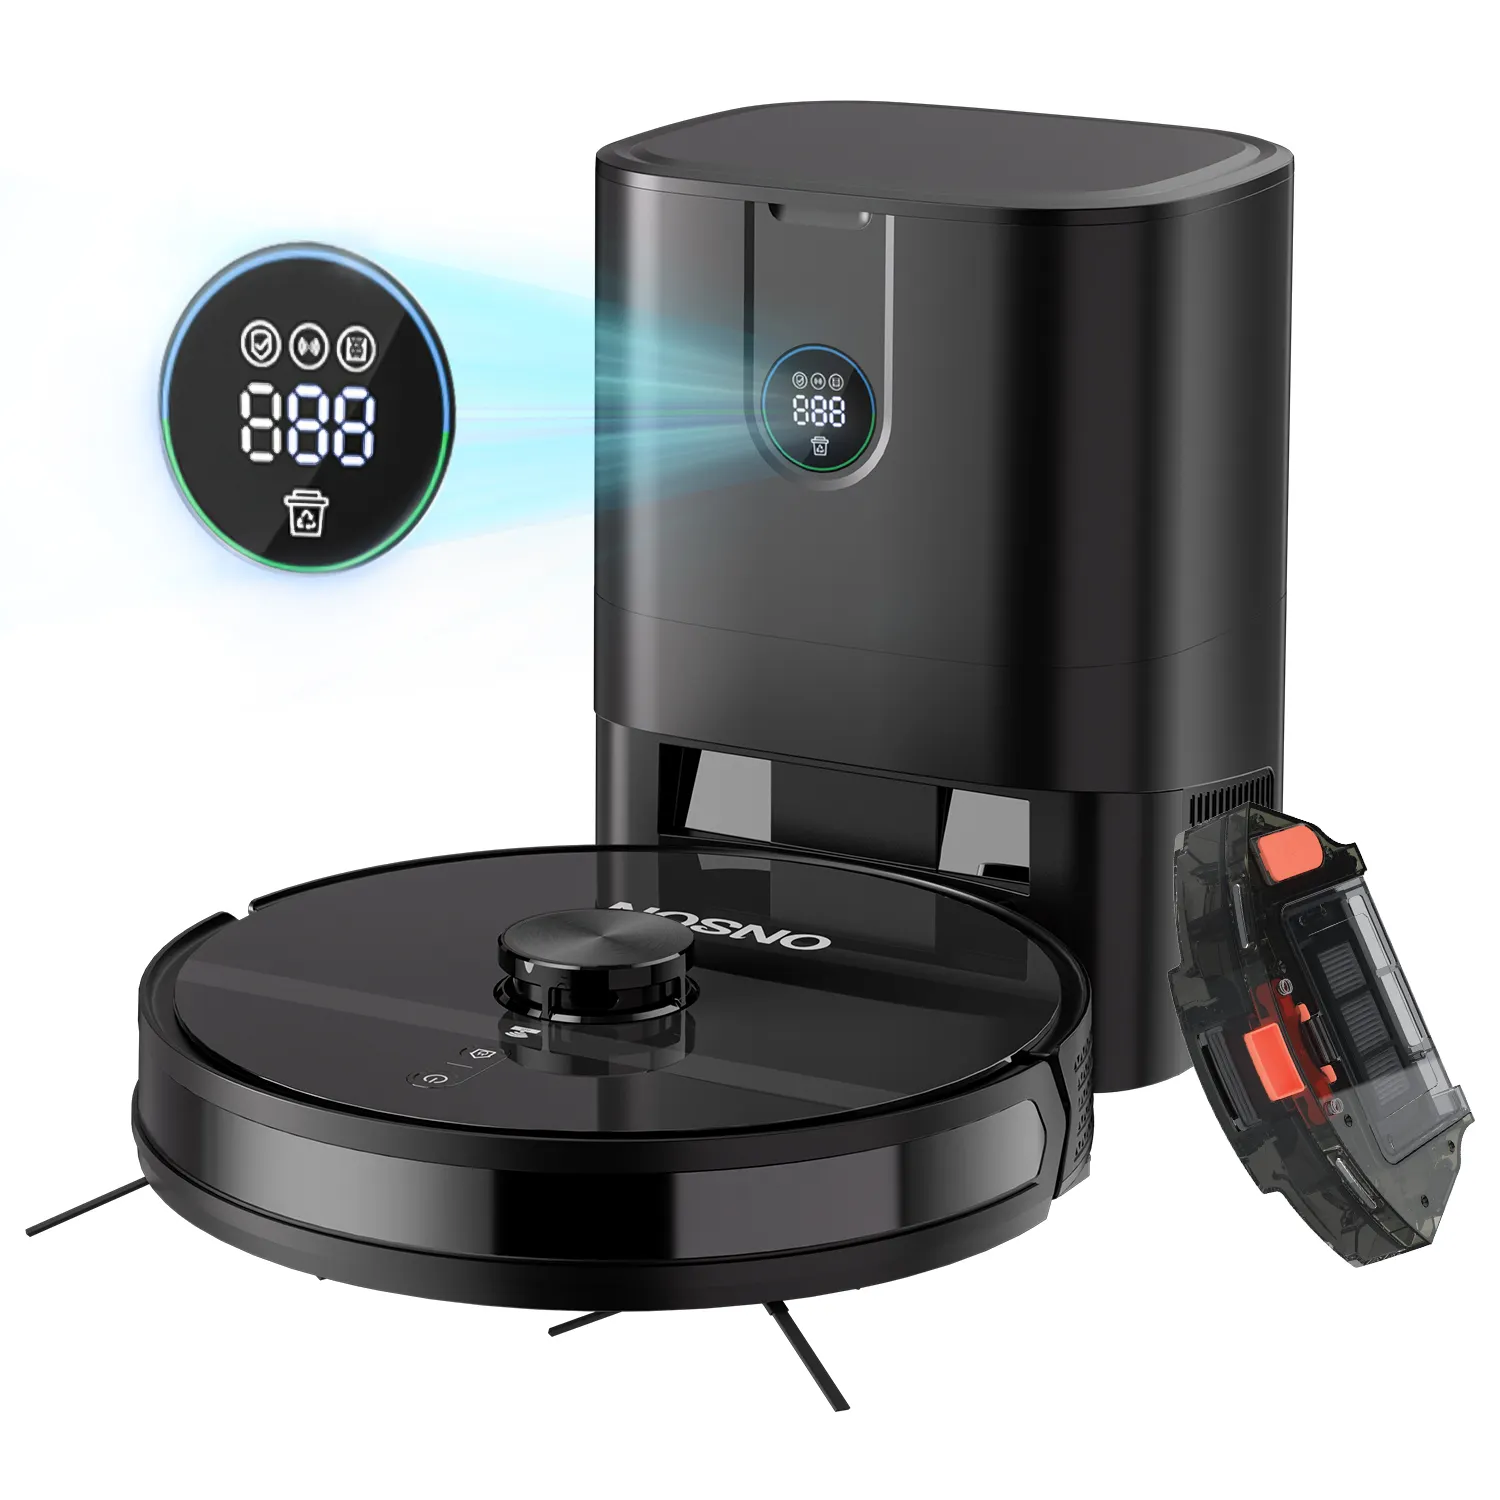 Lcd Display 3000Pa Laser Navigatie Rijden Huis Hal Mop Floor Zelf Legen Vuilnisbak Smart Robot Stofzuiger